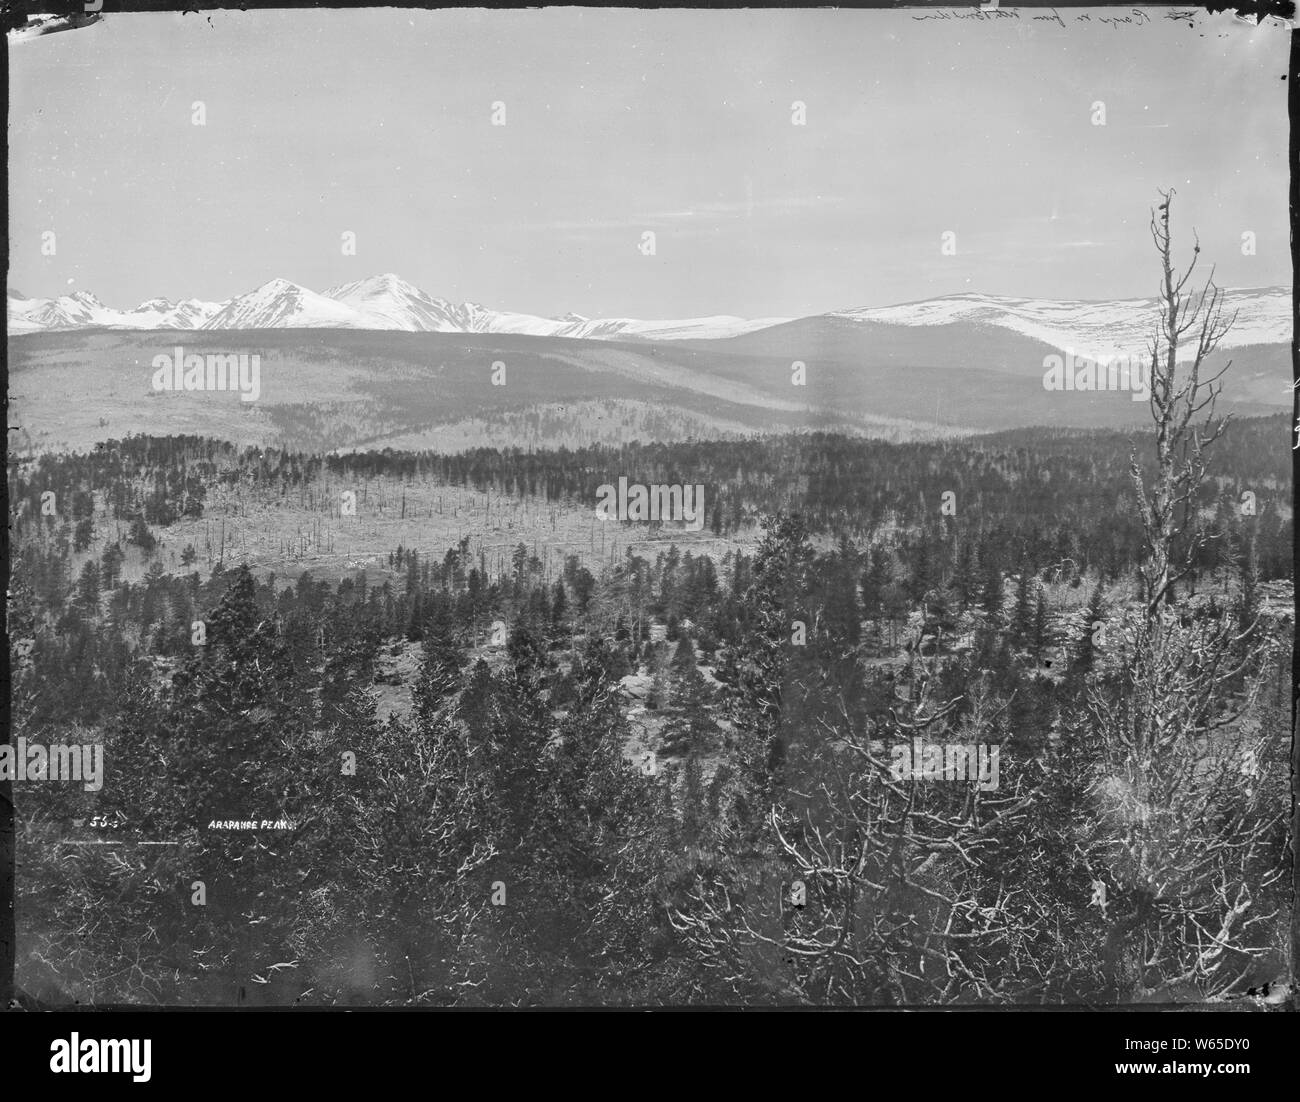 Gamma anteriore delle Montagne Rocciose dalla prospettiva di montagna del nord del Nord Boulder, Colorado, mostrando Arapaho picco. Foto Stock